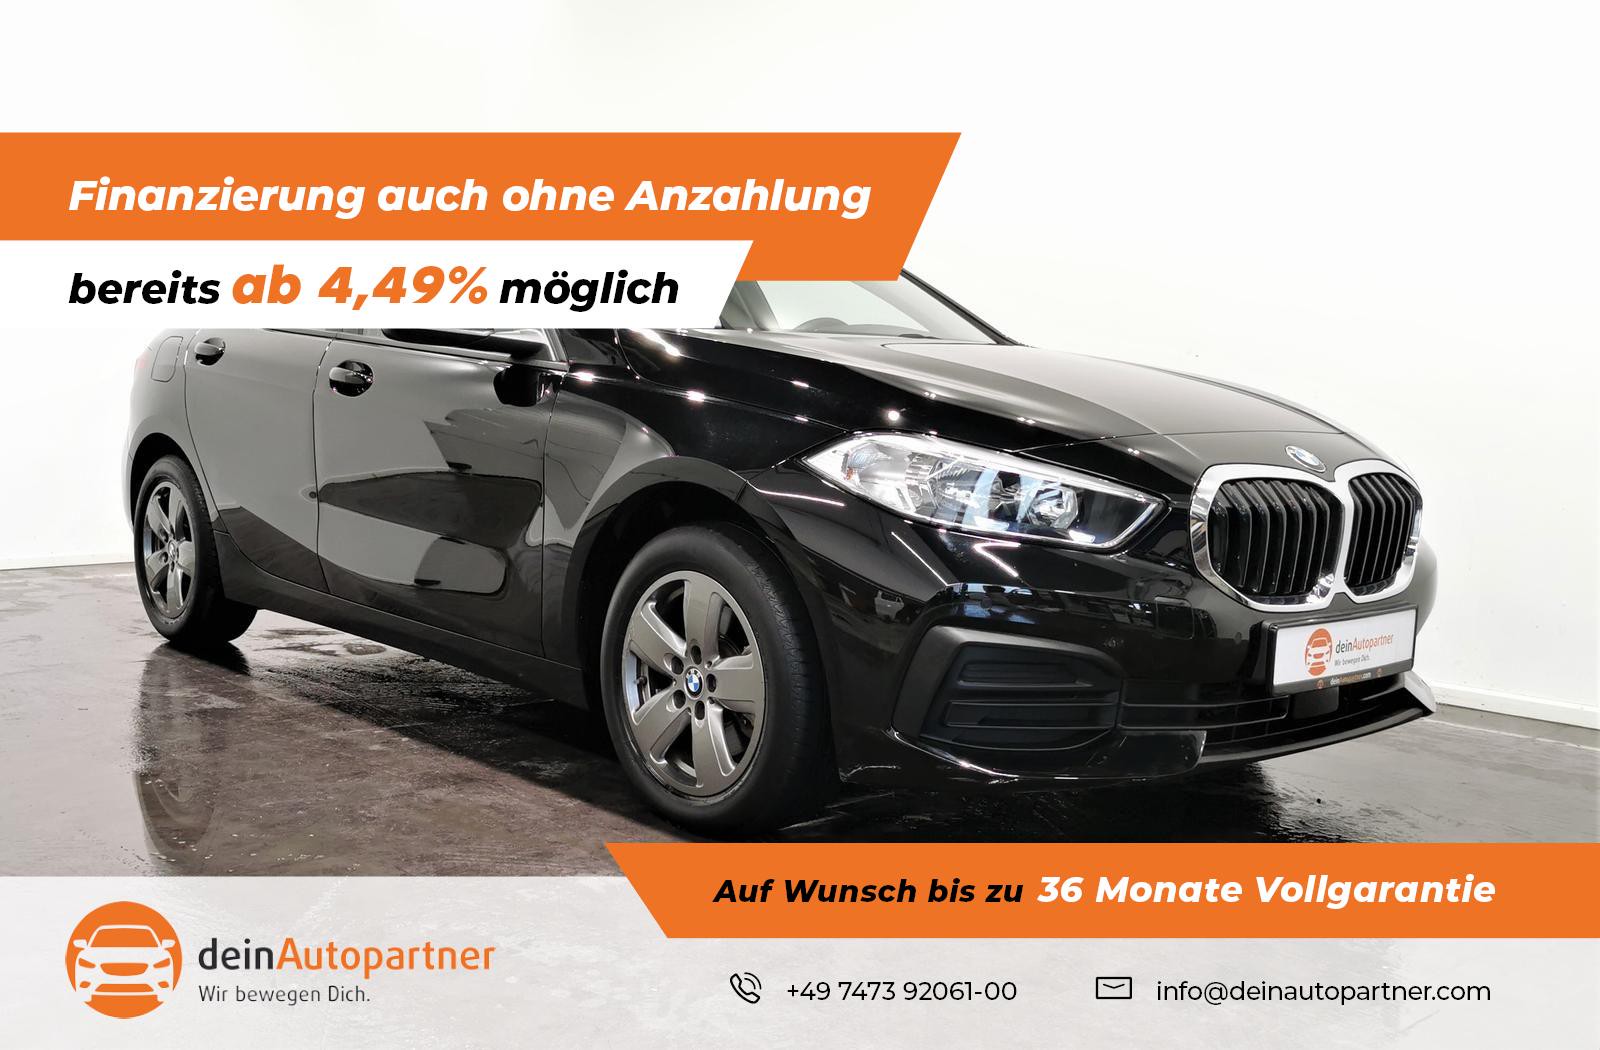 BMW 118 i 5-Türer gebraucht kaufen in Mössingen Preis 20900 eur